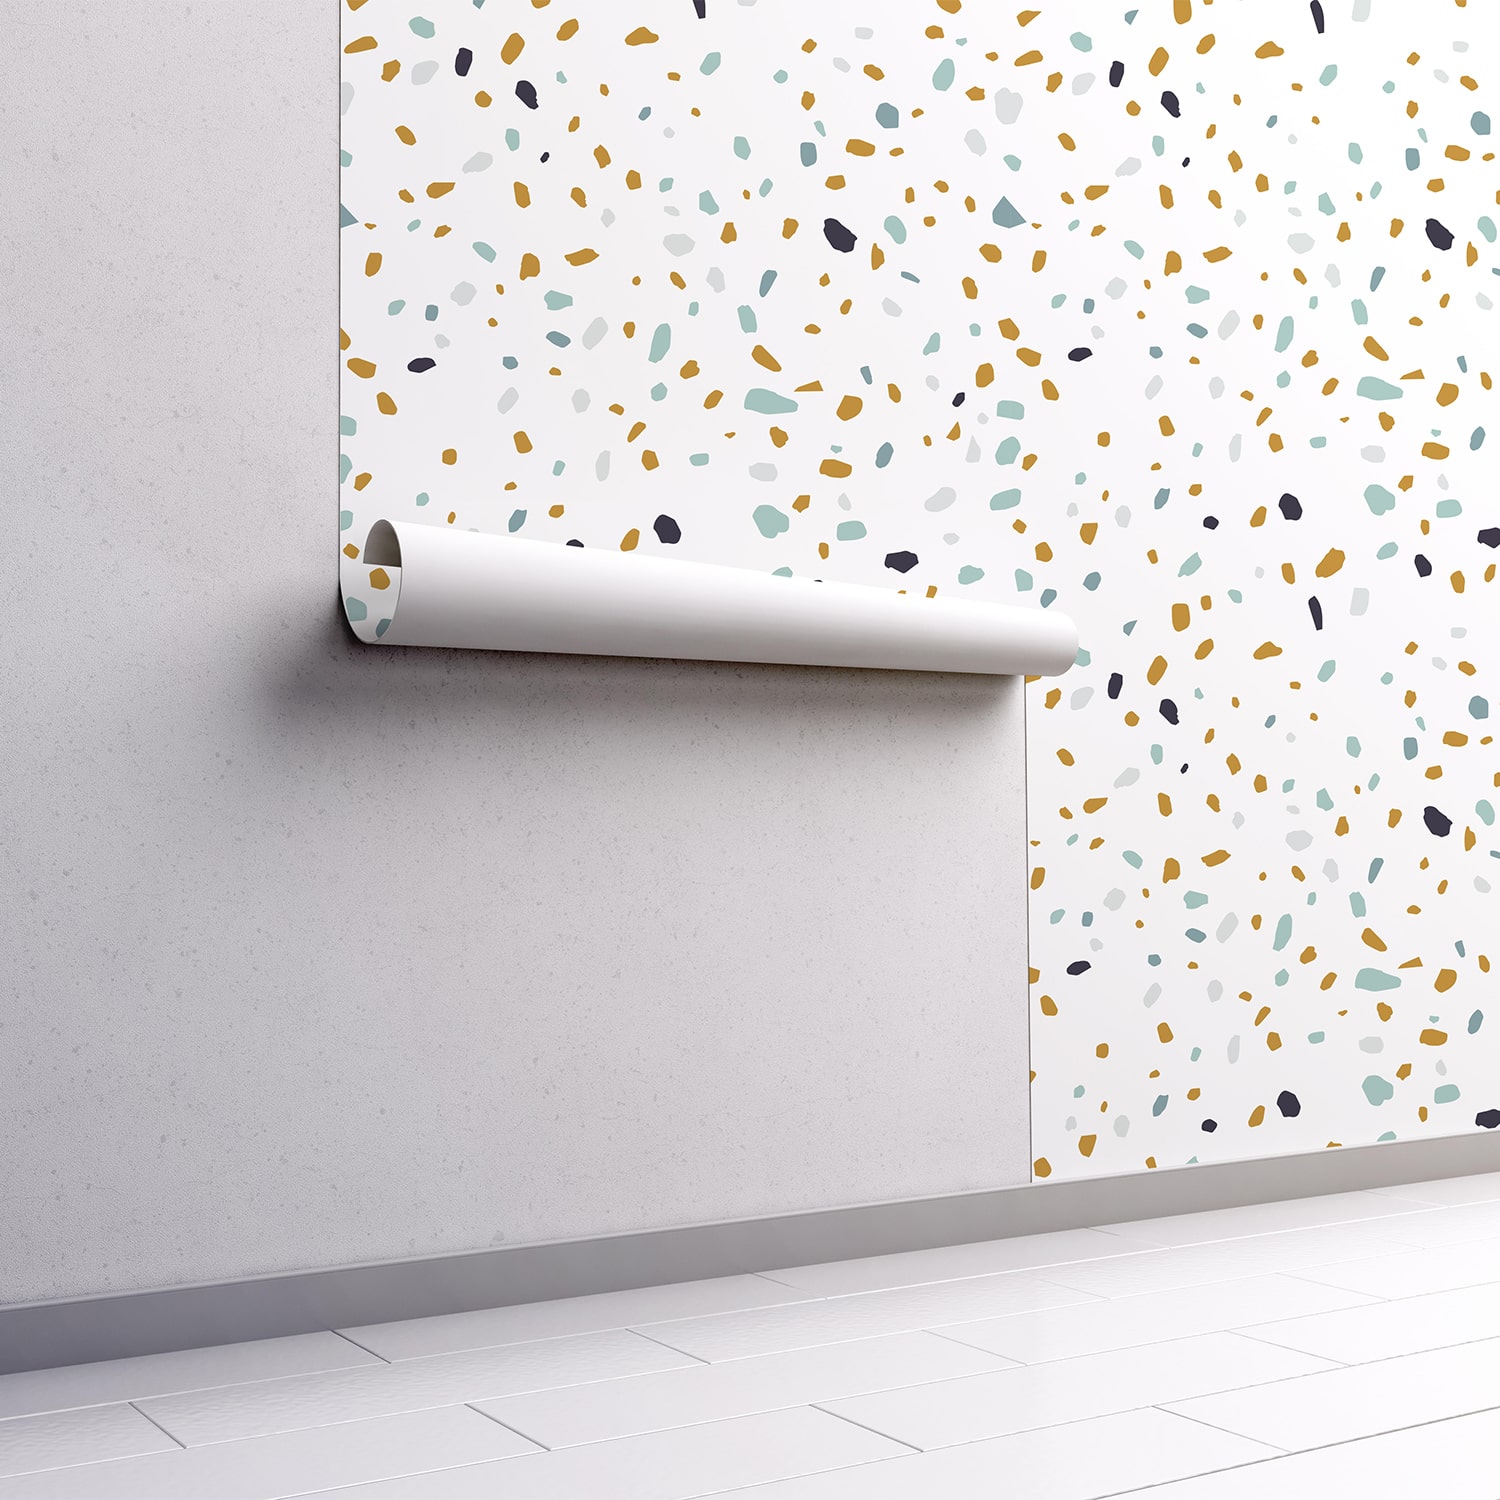 PP93-mur.rouleau-papier-peint-adhesif-decoratif-revetement-vinyle-motifs-brisure-bleu-jaune-renovation-meuble-mur-min